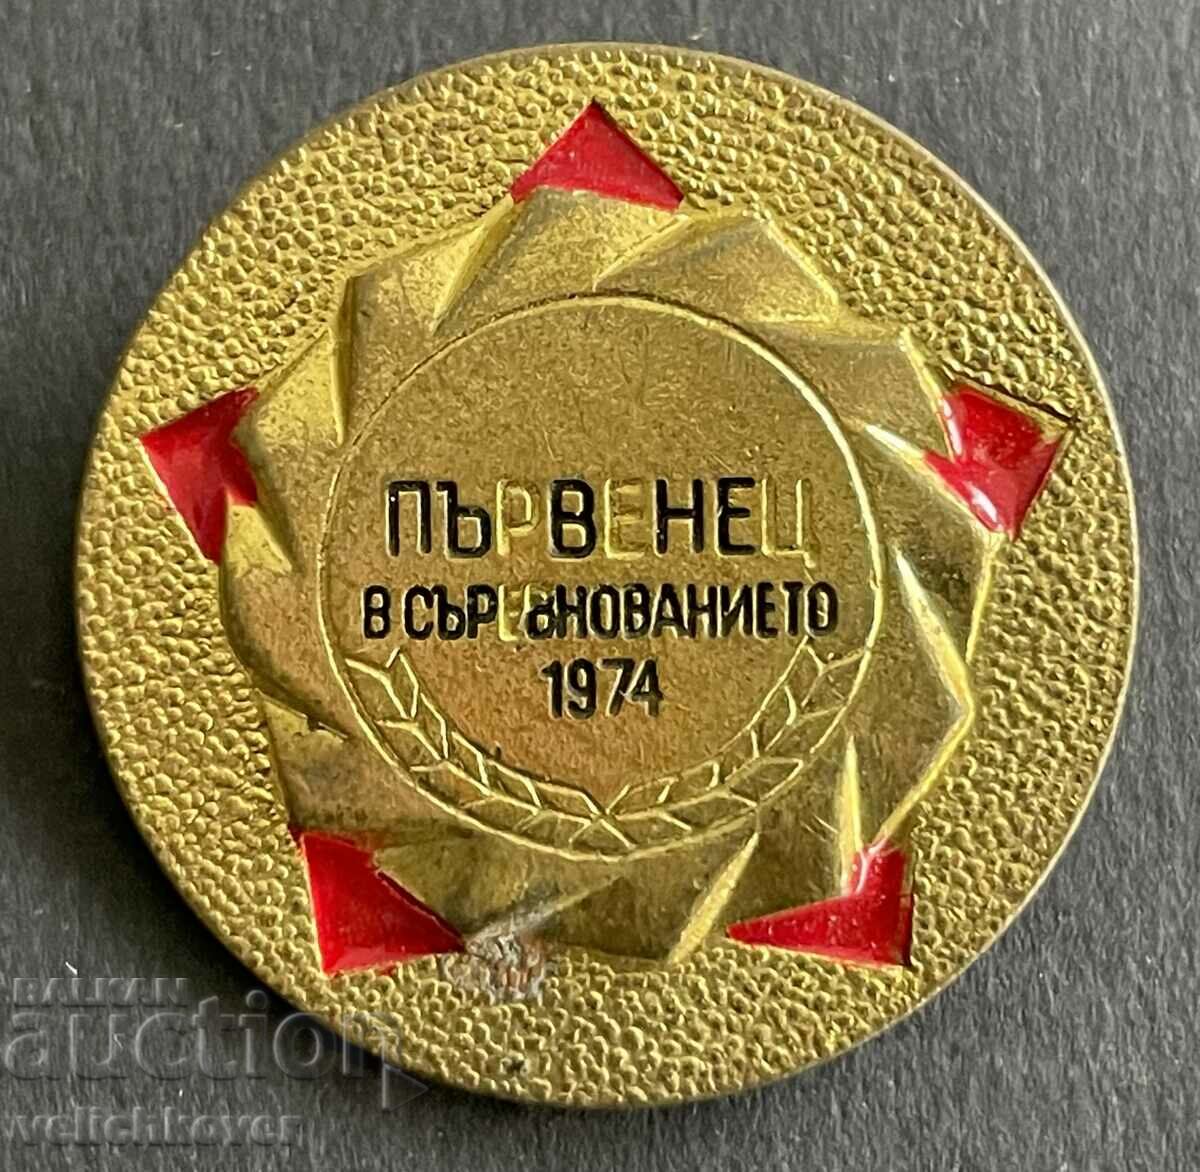 37563 Σήμα Βουλγαρίας Νικητής στο διαγωνισμό του 1974.